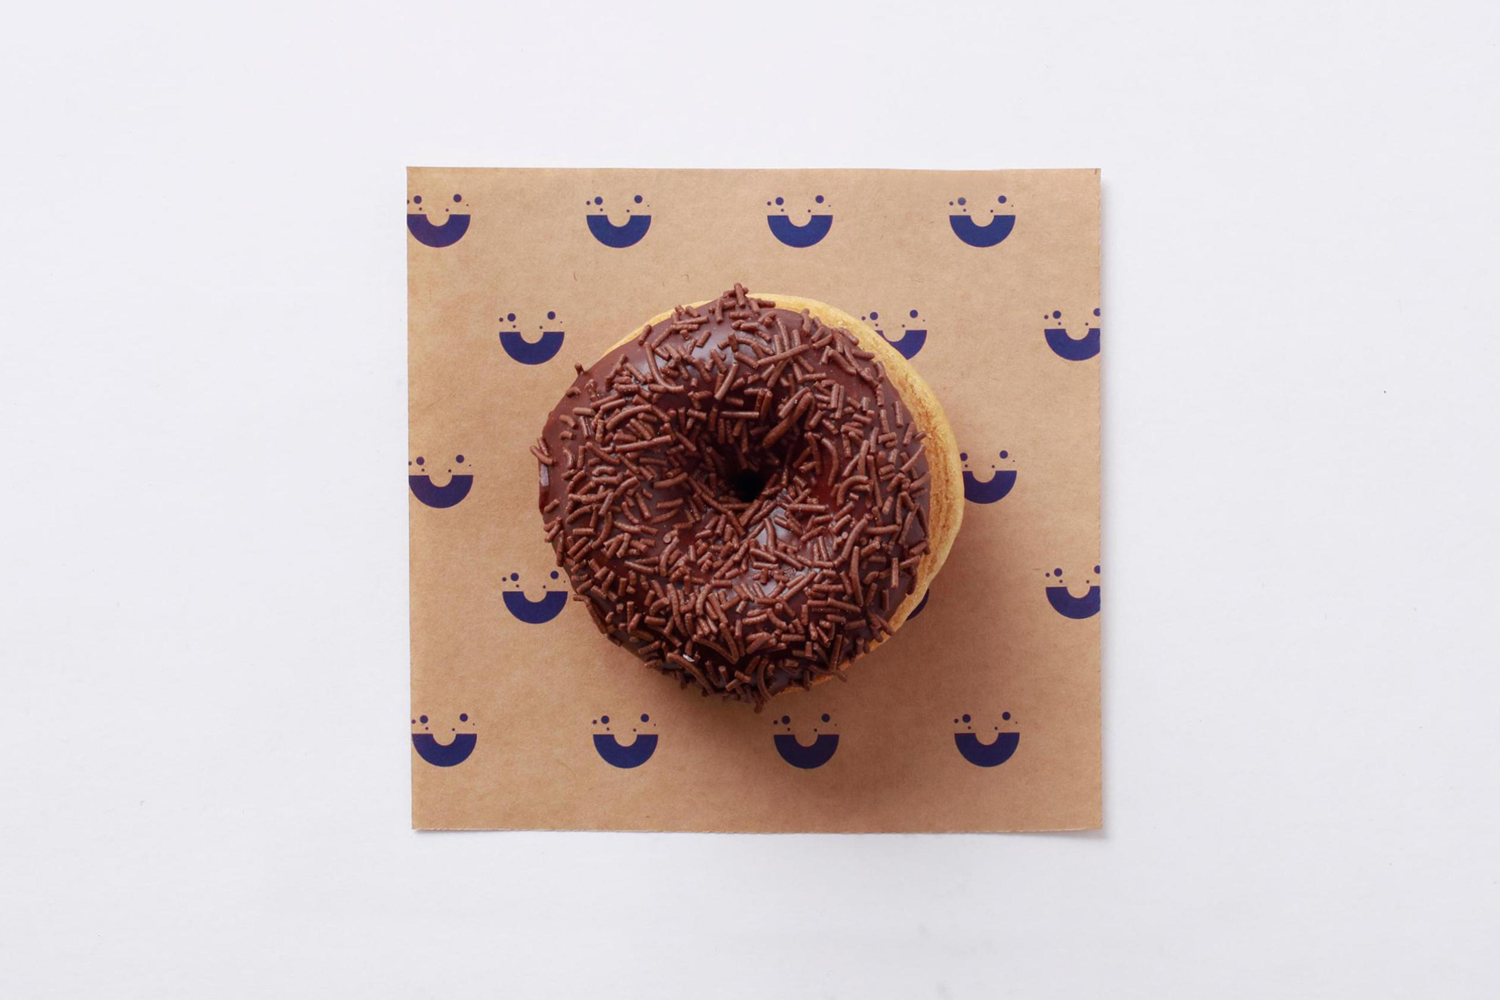 Branding and branded napkins by Sydney-based graphic design studio Garbett for donut bakery Happy Maple. 